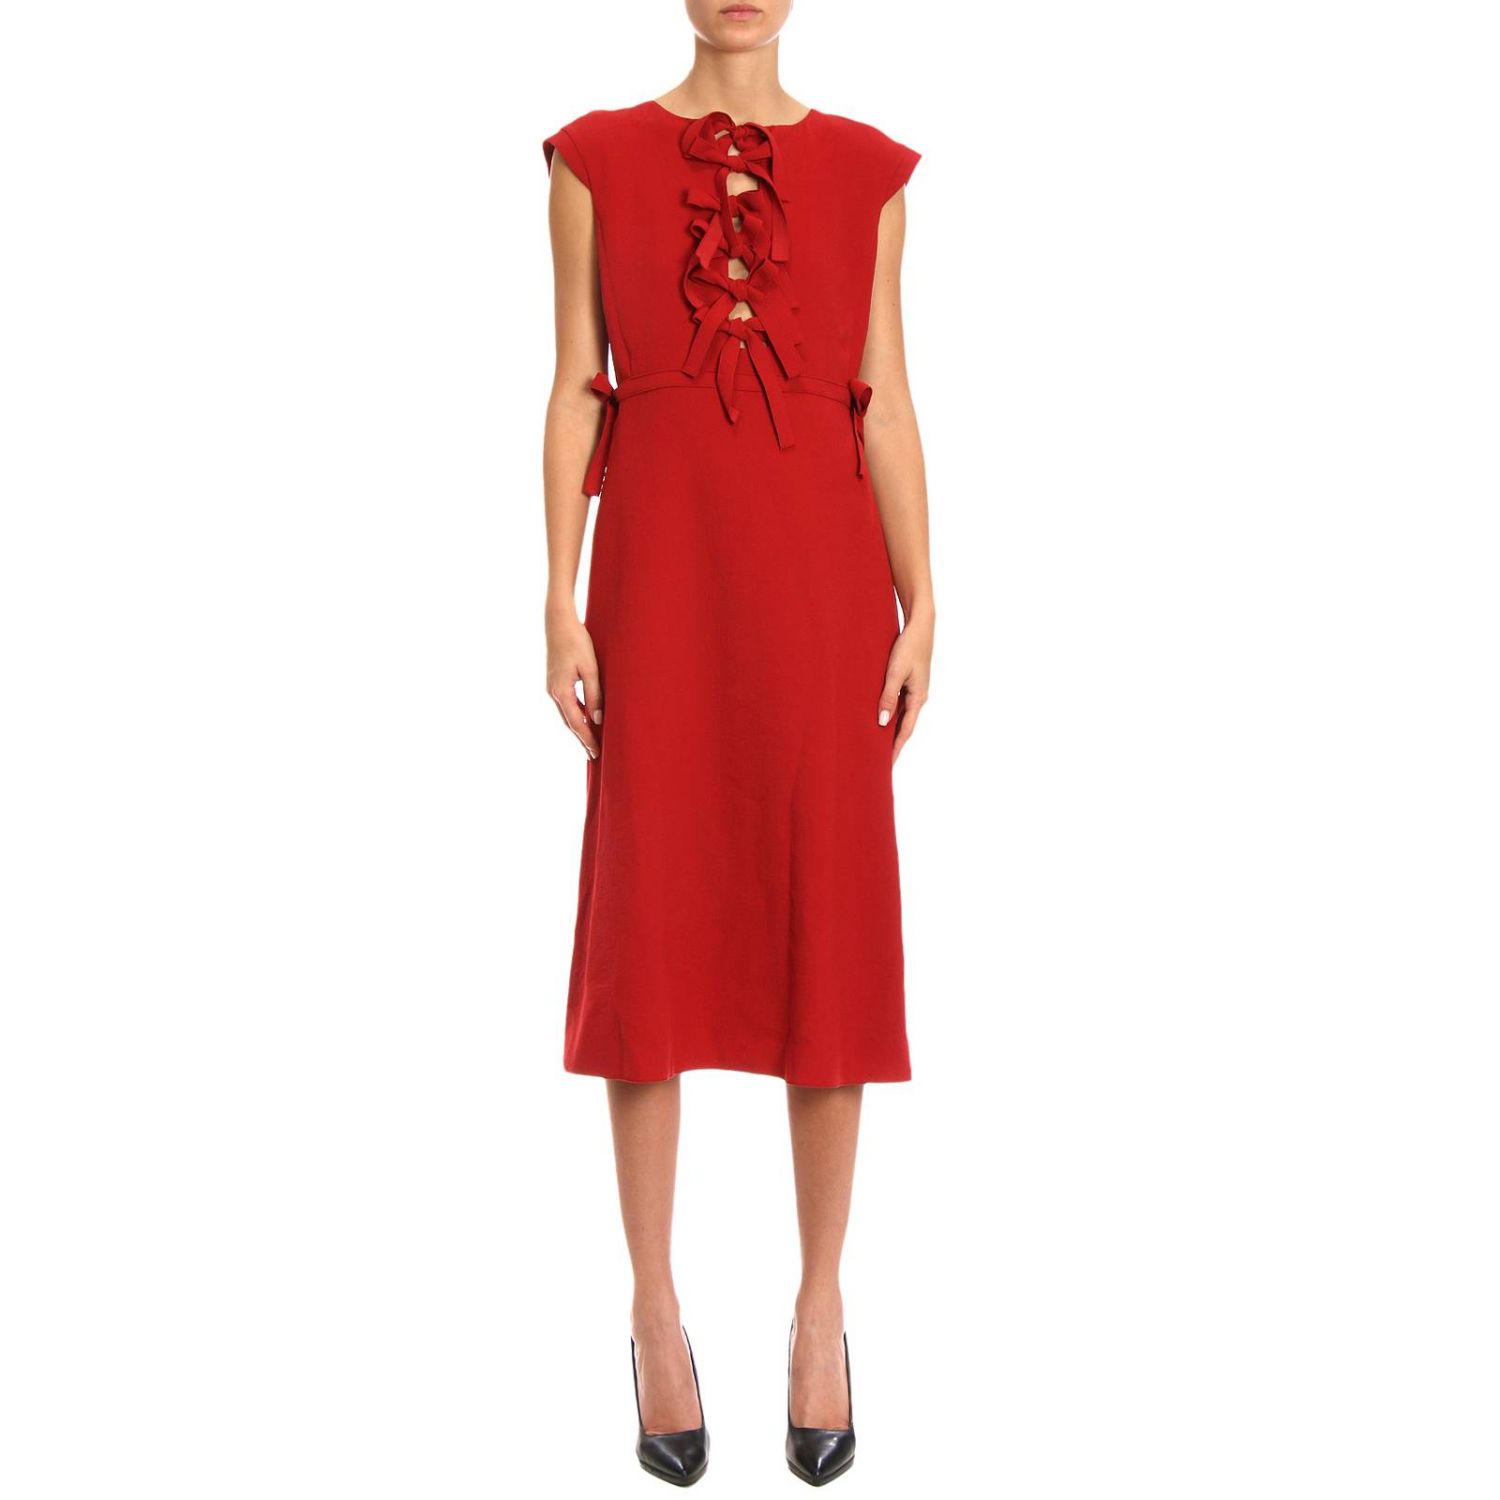 Bottega Veneta Outlet: dress for woman - Red | Bottega Veneta dress ...